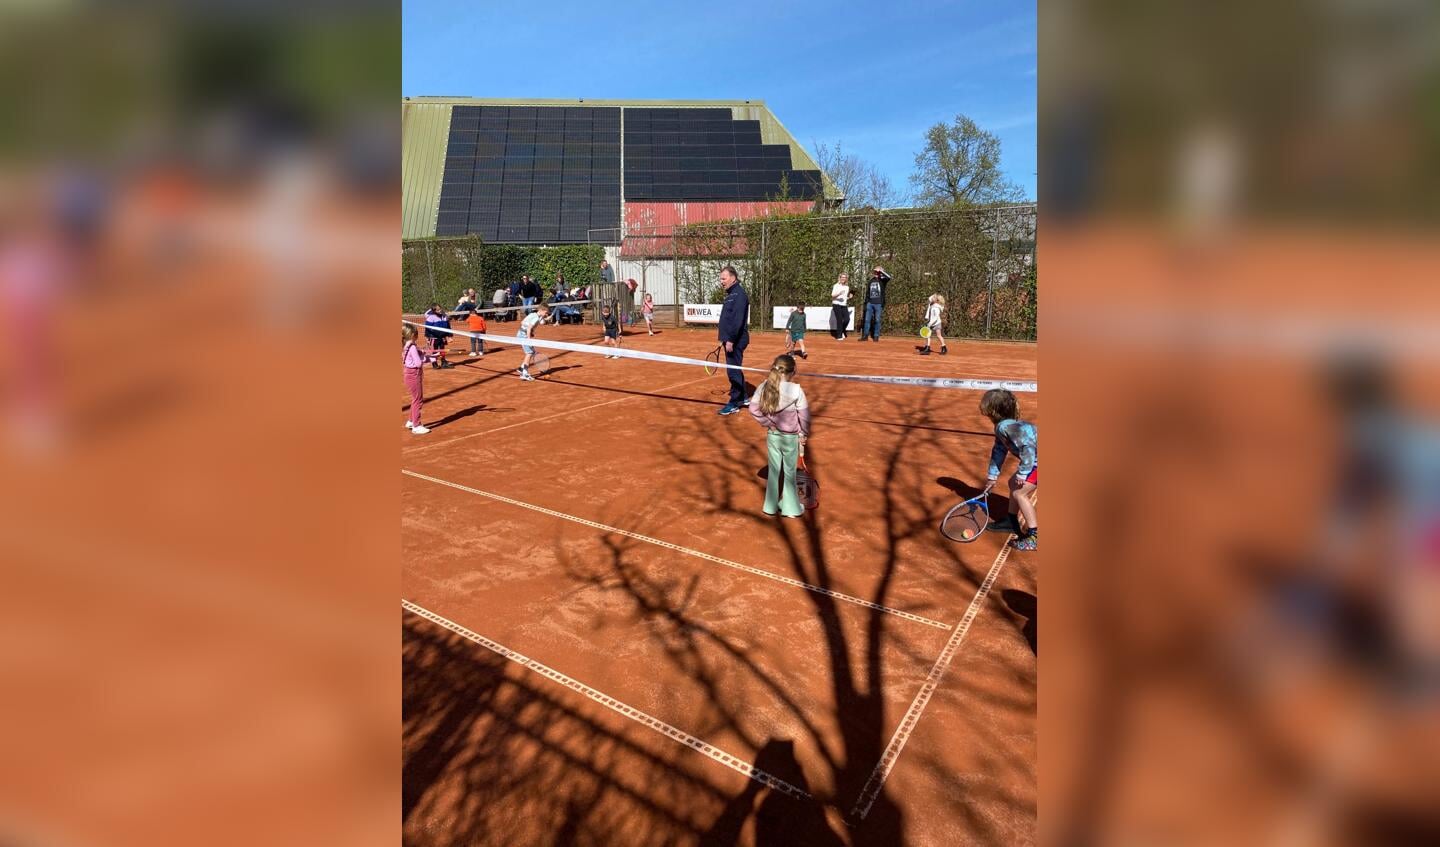 Tennissen in de zon.